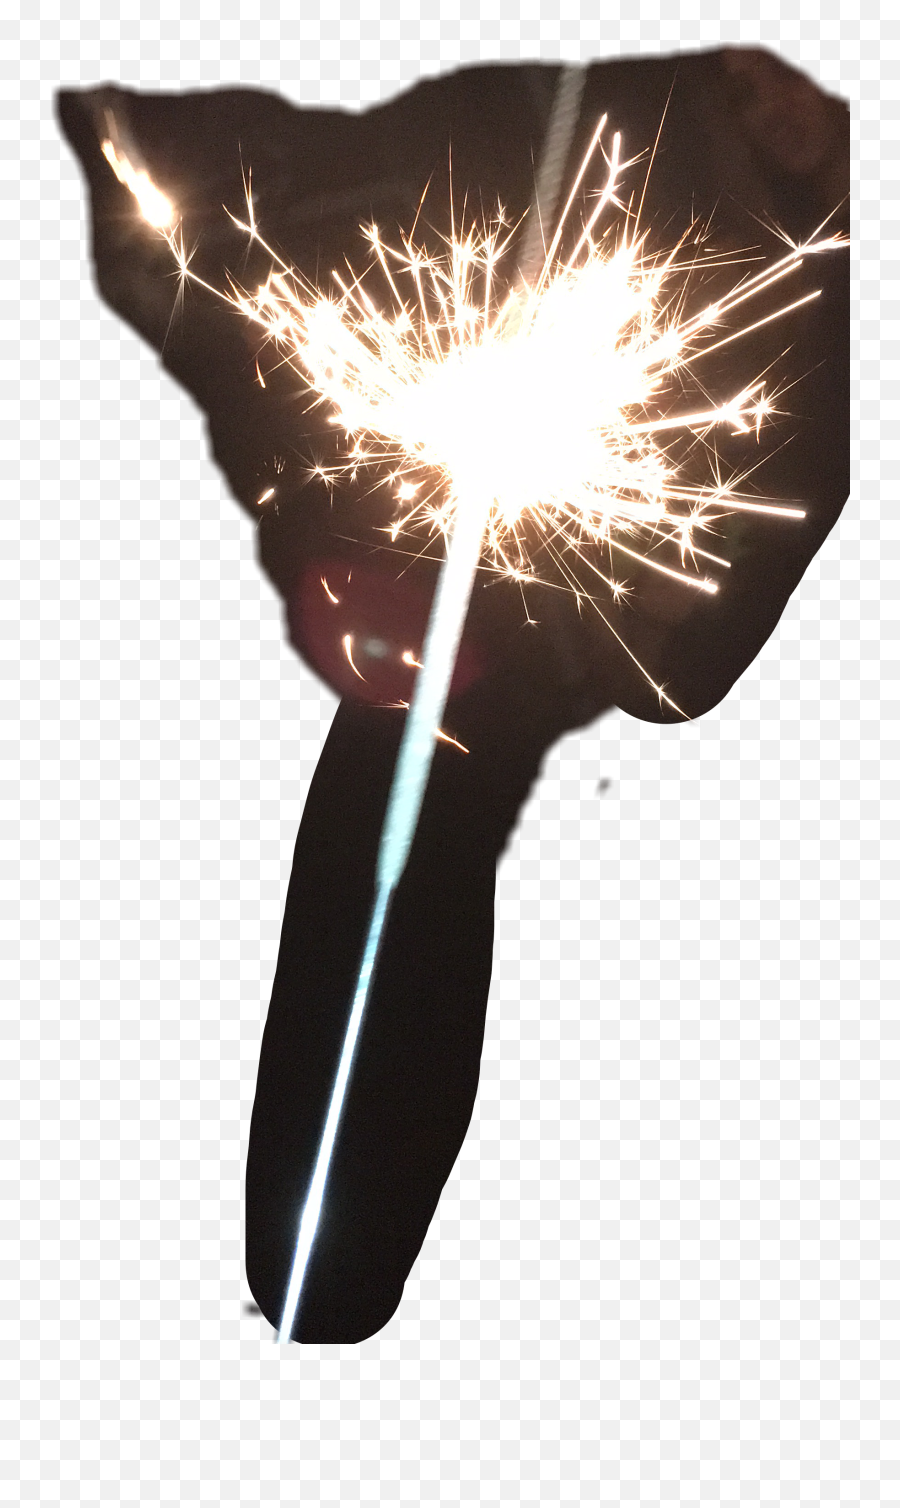 Download Sparkler Fireworks Fire Works - Sparkler Png,Sparkler Png